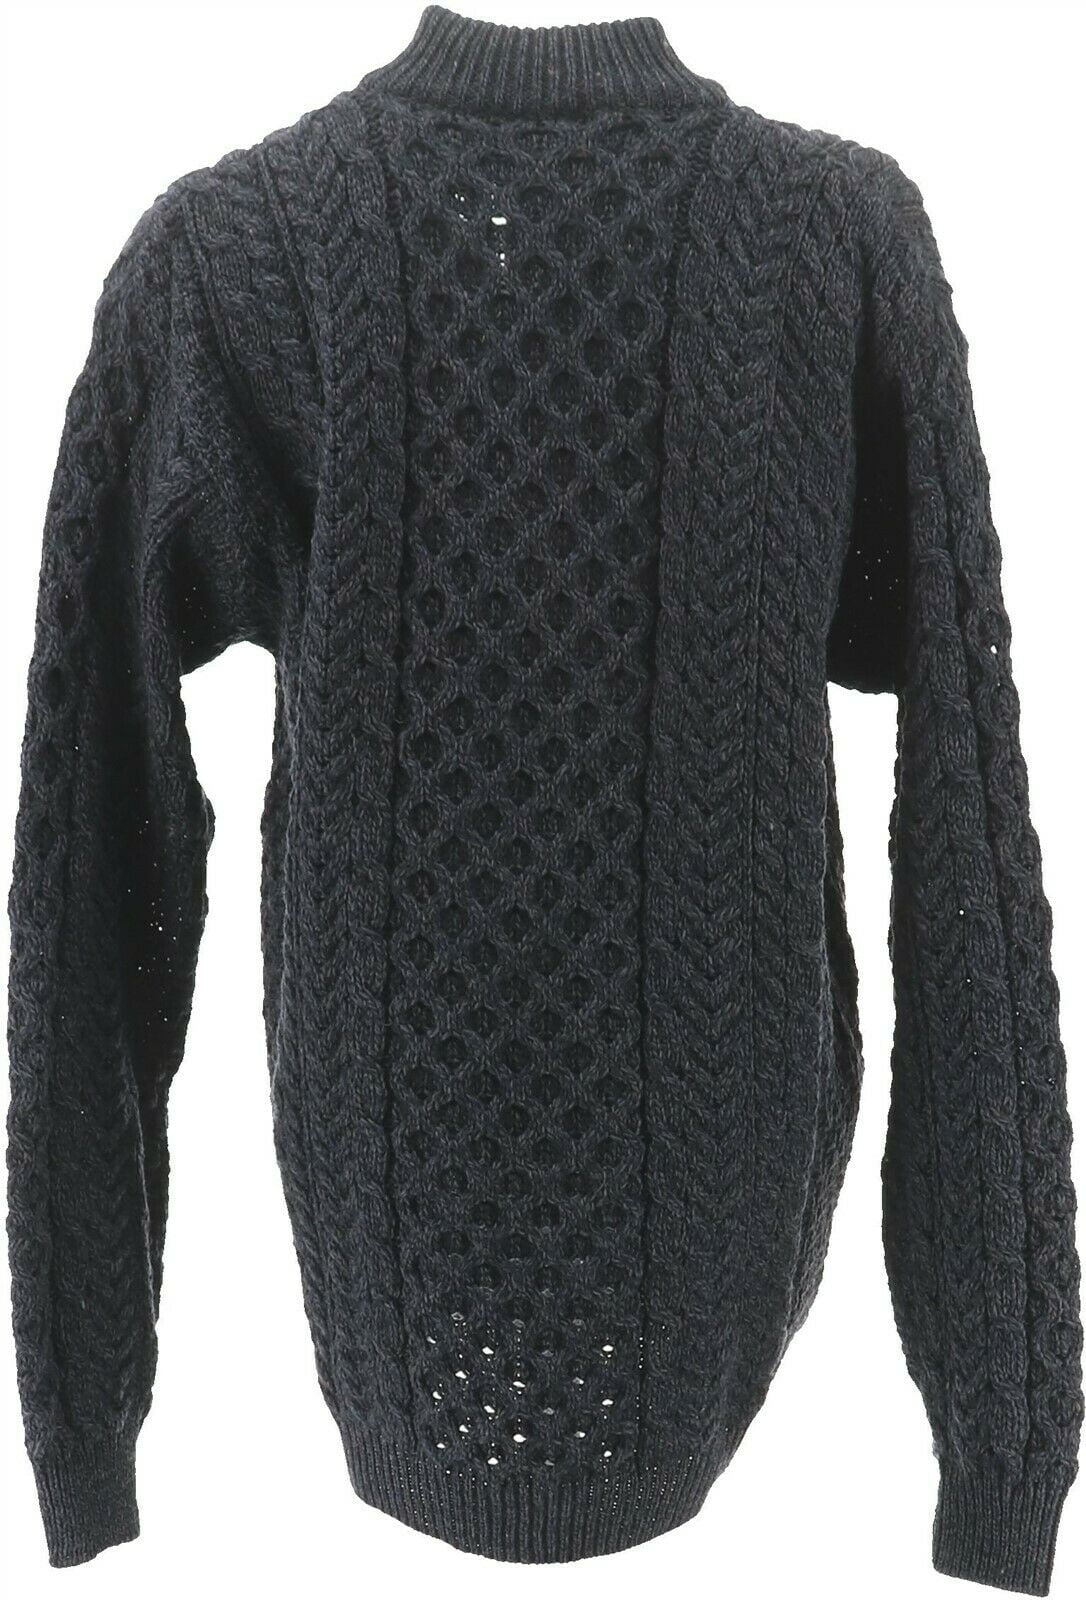 kilronan sweaters